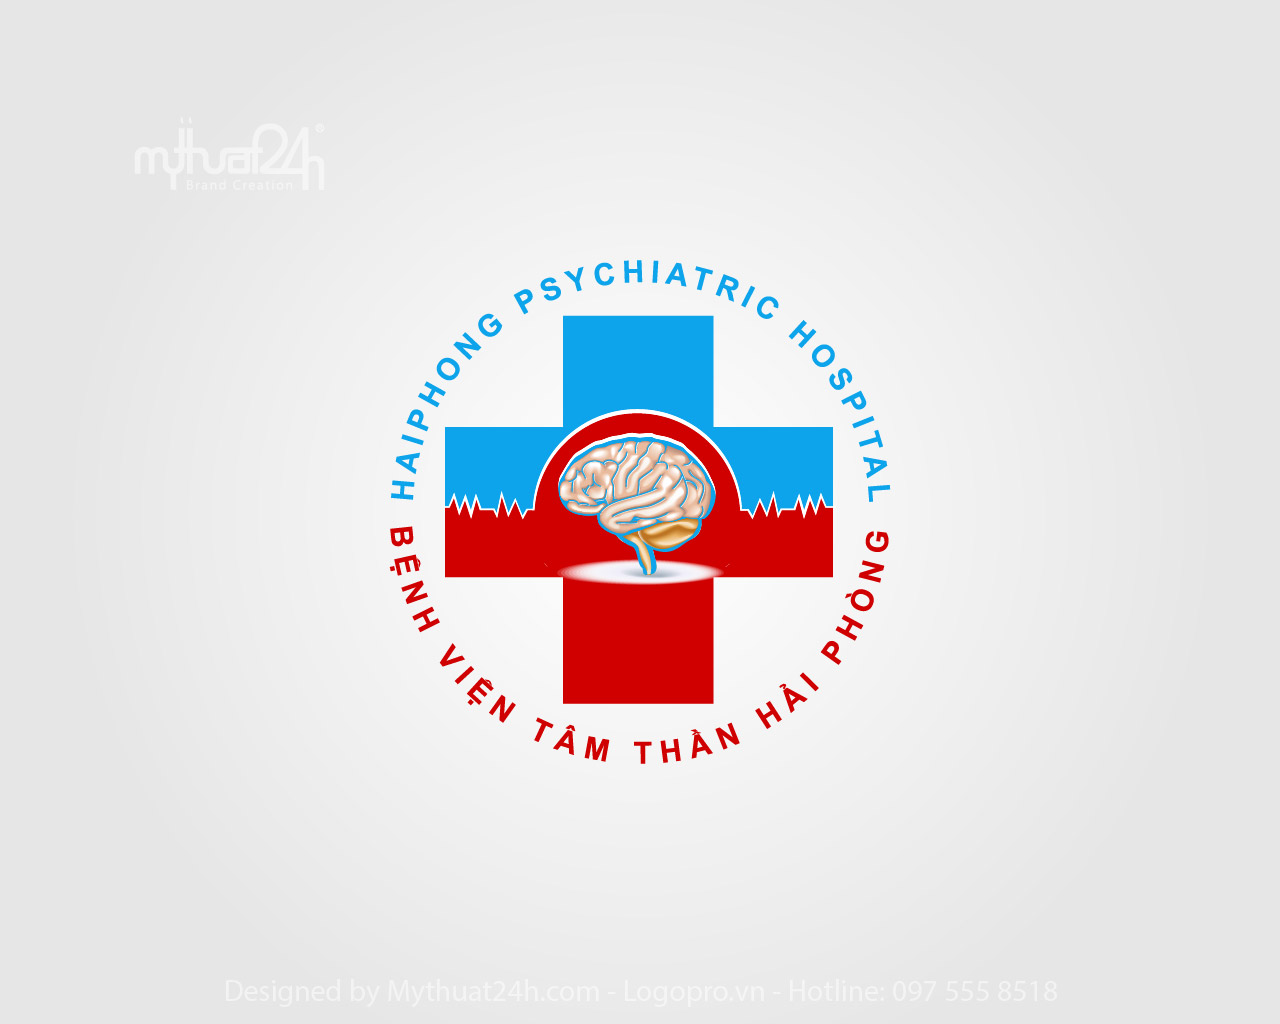 thiết kế logo bệnh viện tâm thần hải phòng